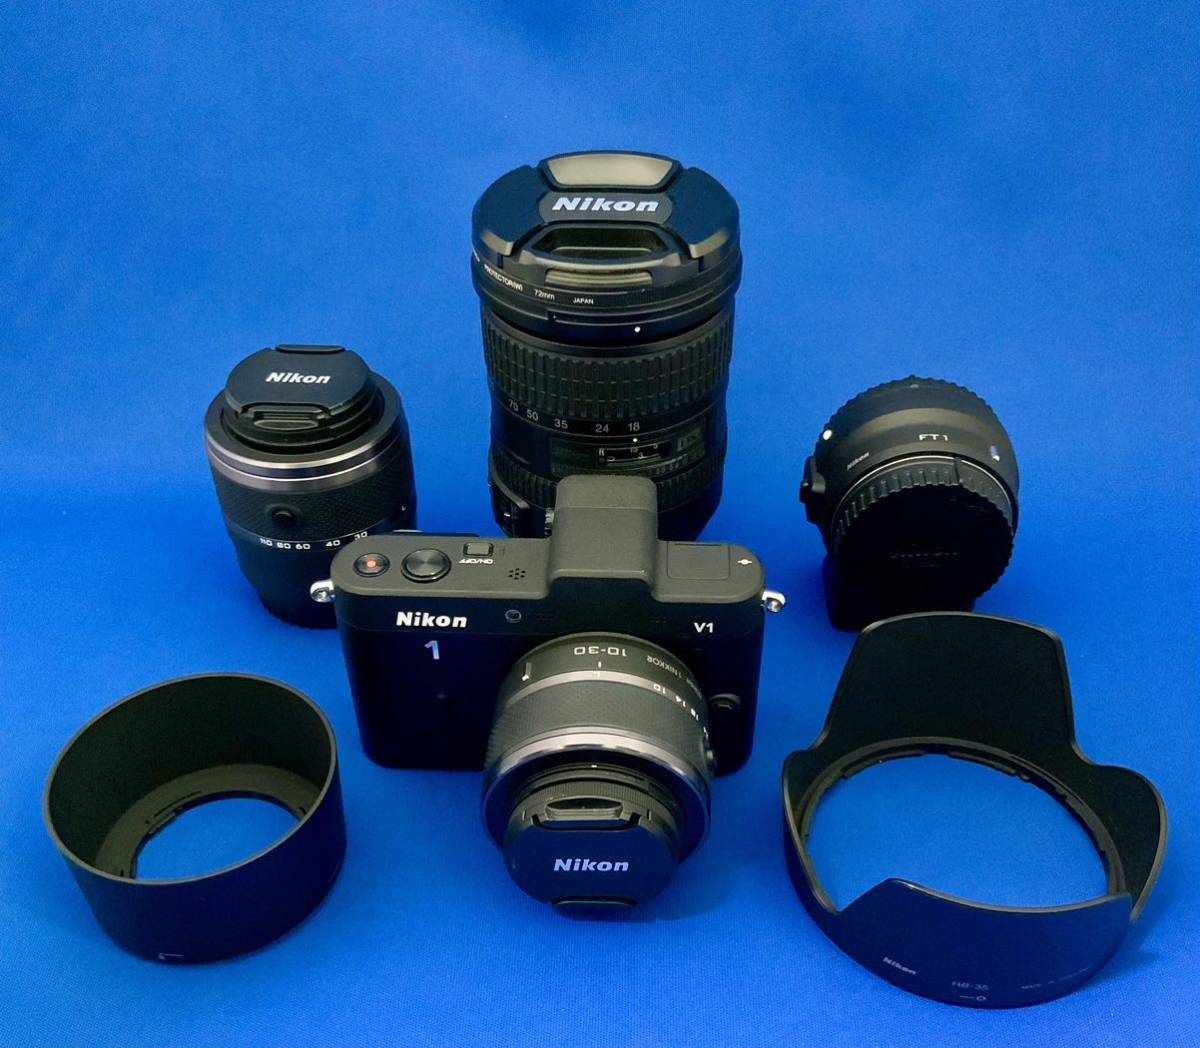 Nikon1 V1 ダブルズームレンズおよびFT1+DXズームレンズの美品セット_画像1